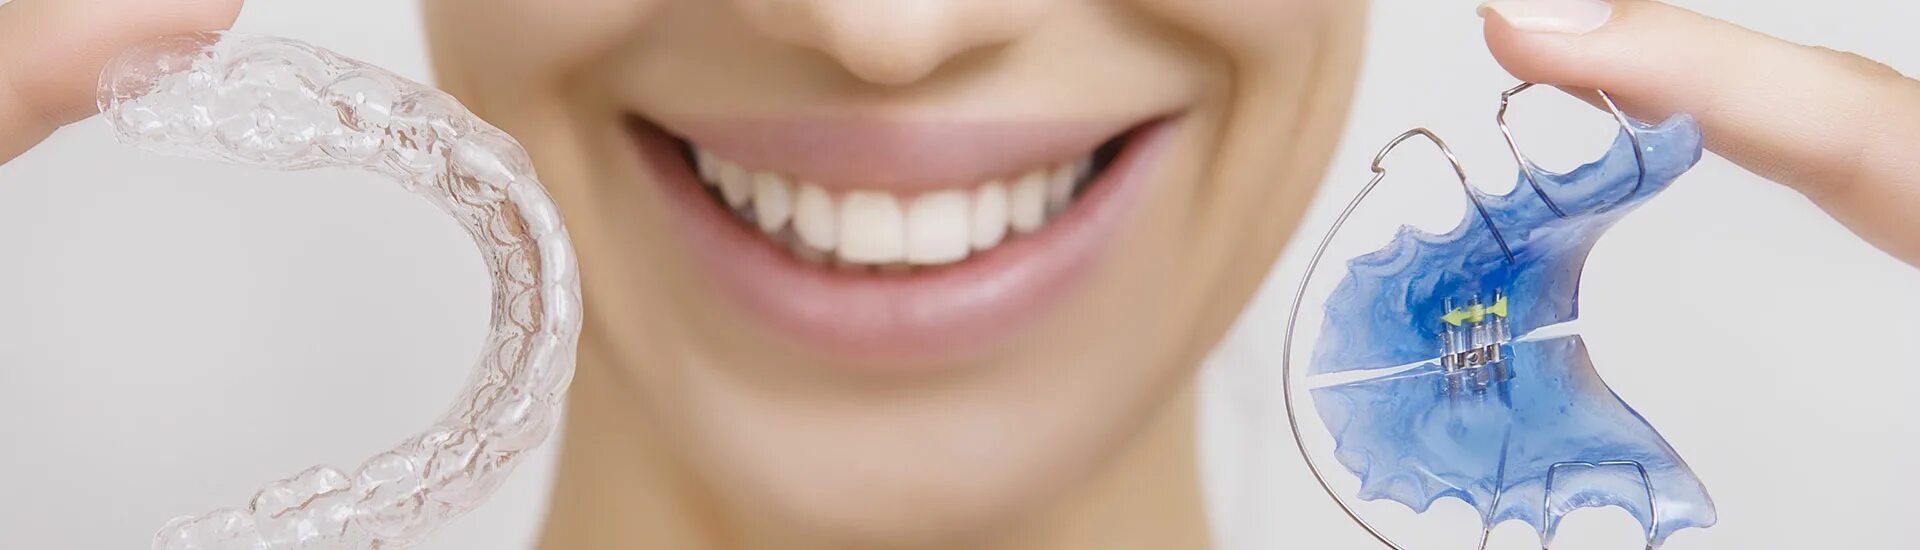 Ортодонтия. Выравнивание зубов коронками.